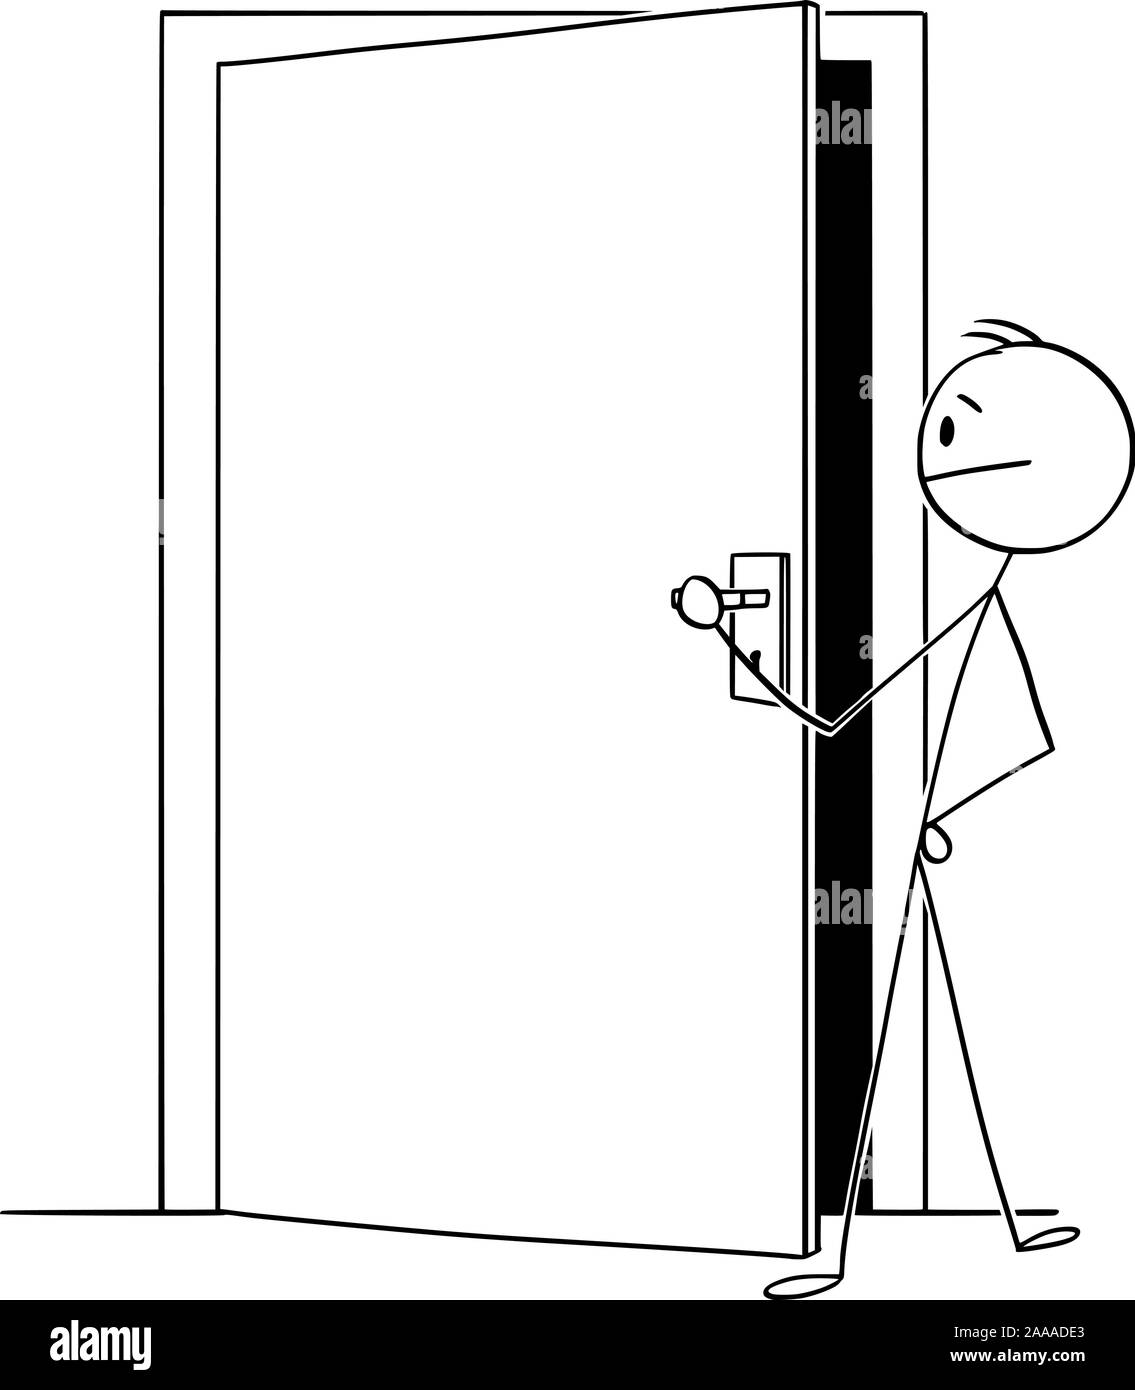 Vektor cartoon Strichmännchen Zeichnen konzeptionelle Darstellung der Mann oder Geschäftsmann auf der Suche durch die leicht geöffnete Tür, um zu sehen, was dahinter ist. Stock Vektor